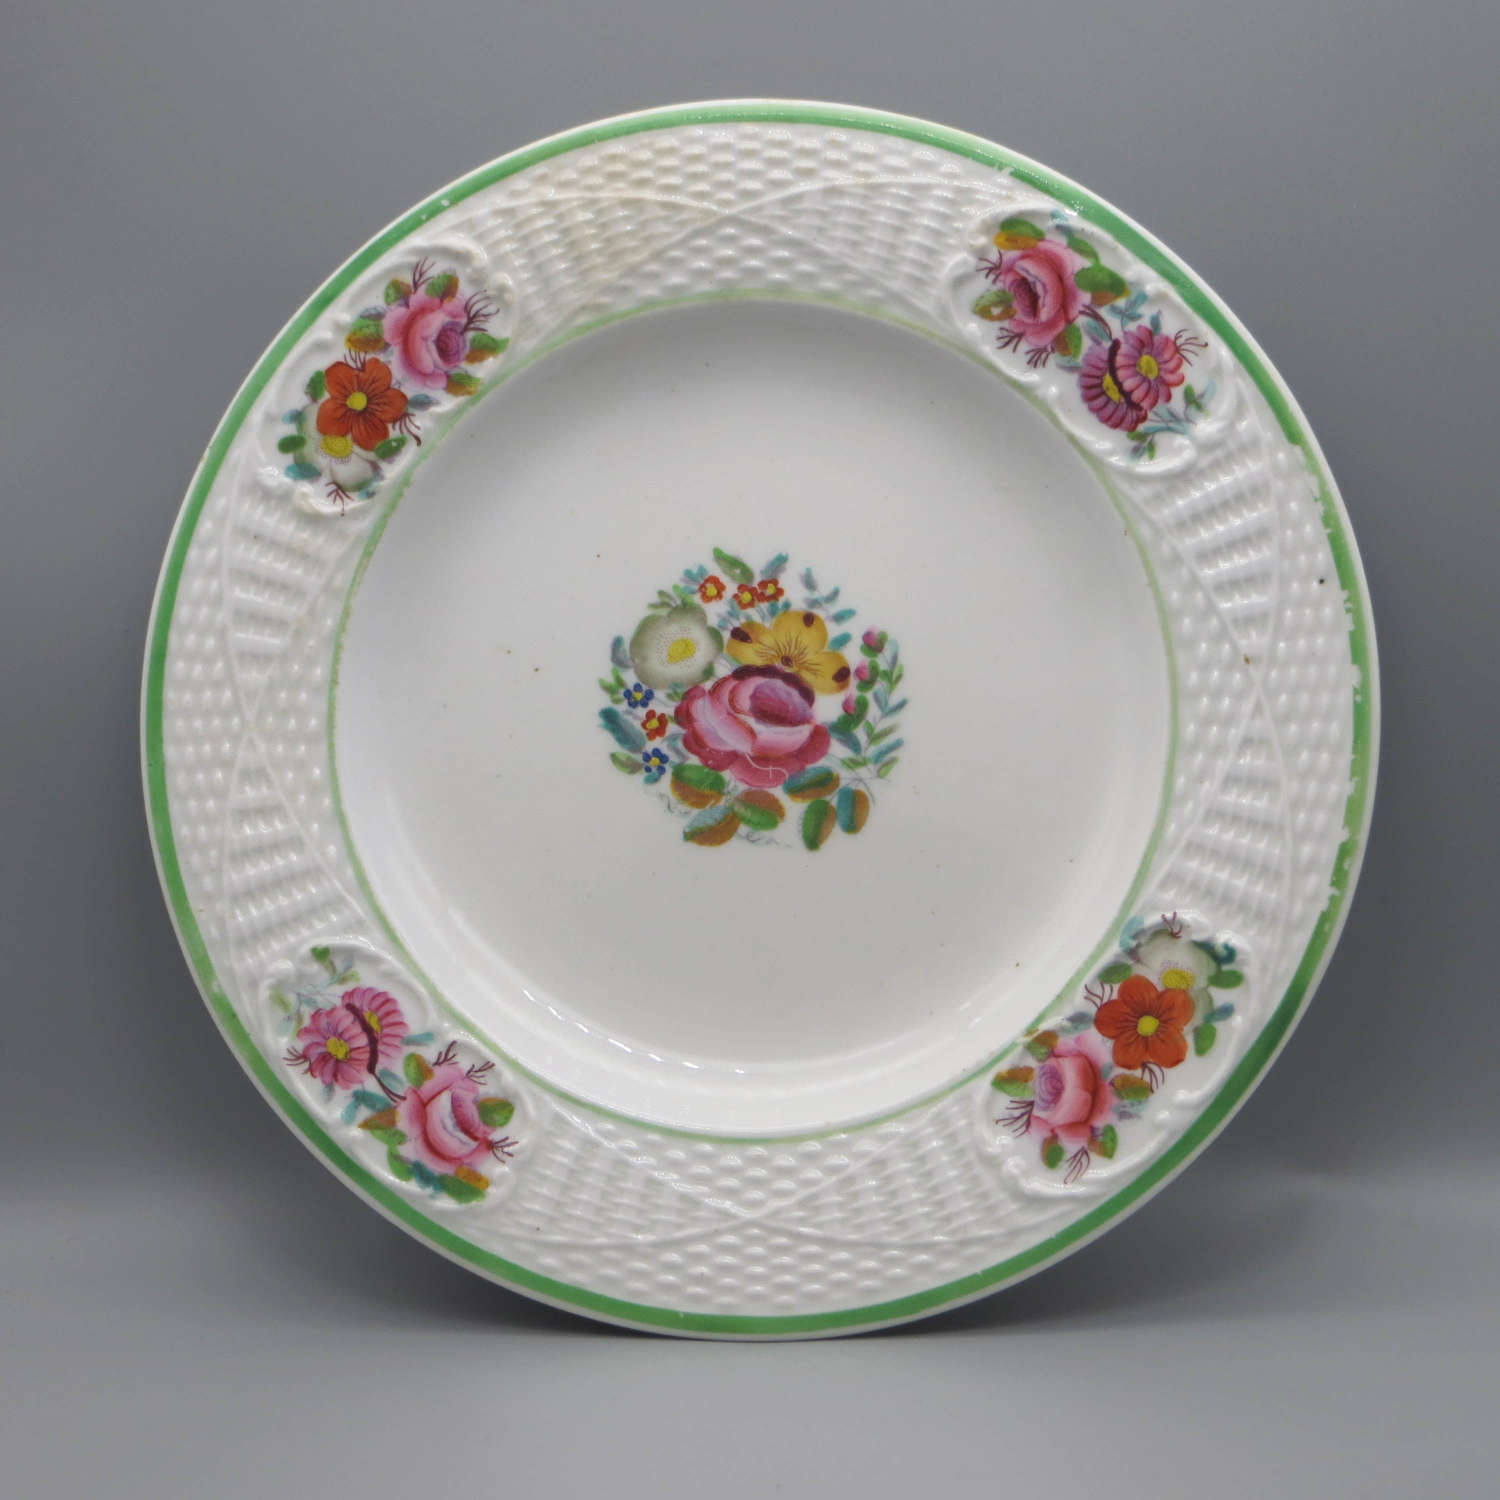 19th century New Hall bone china plate